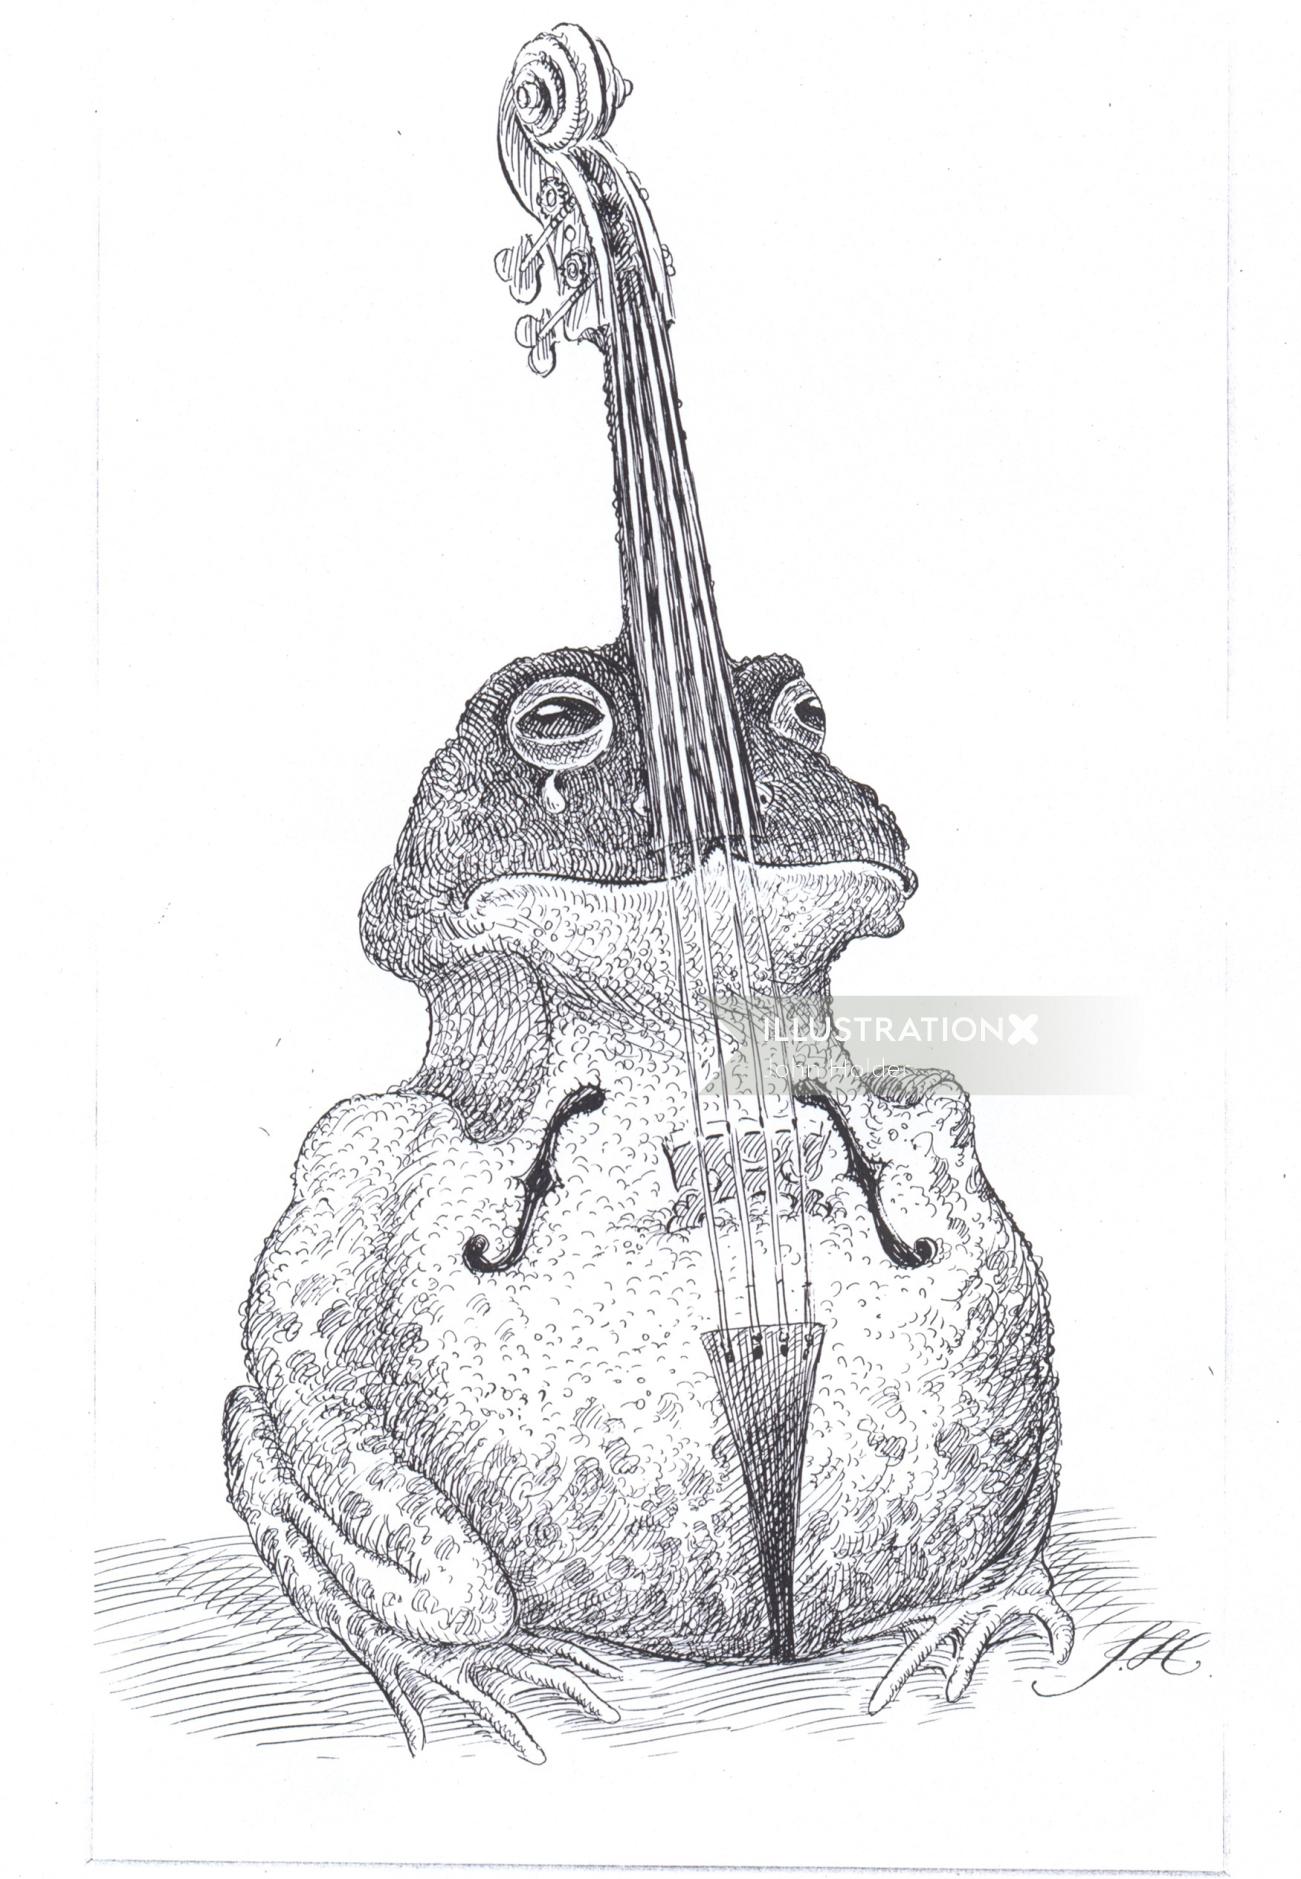 Desenho animado e humor Arte com caneta veterana de um sapo em forma de violino